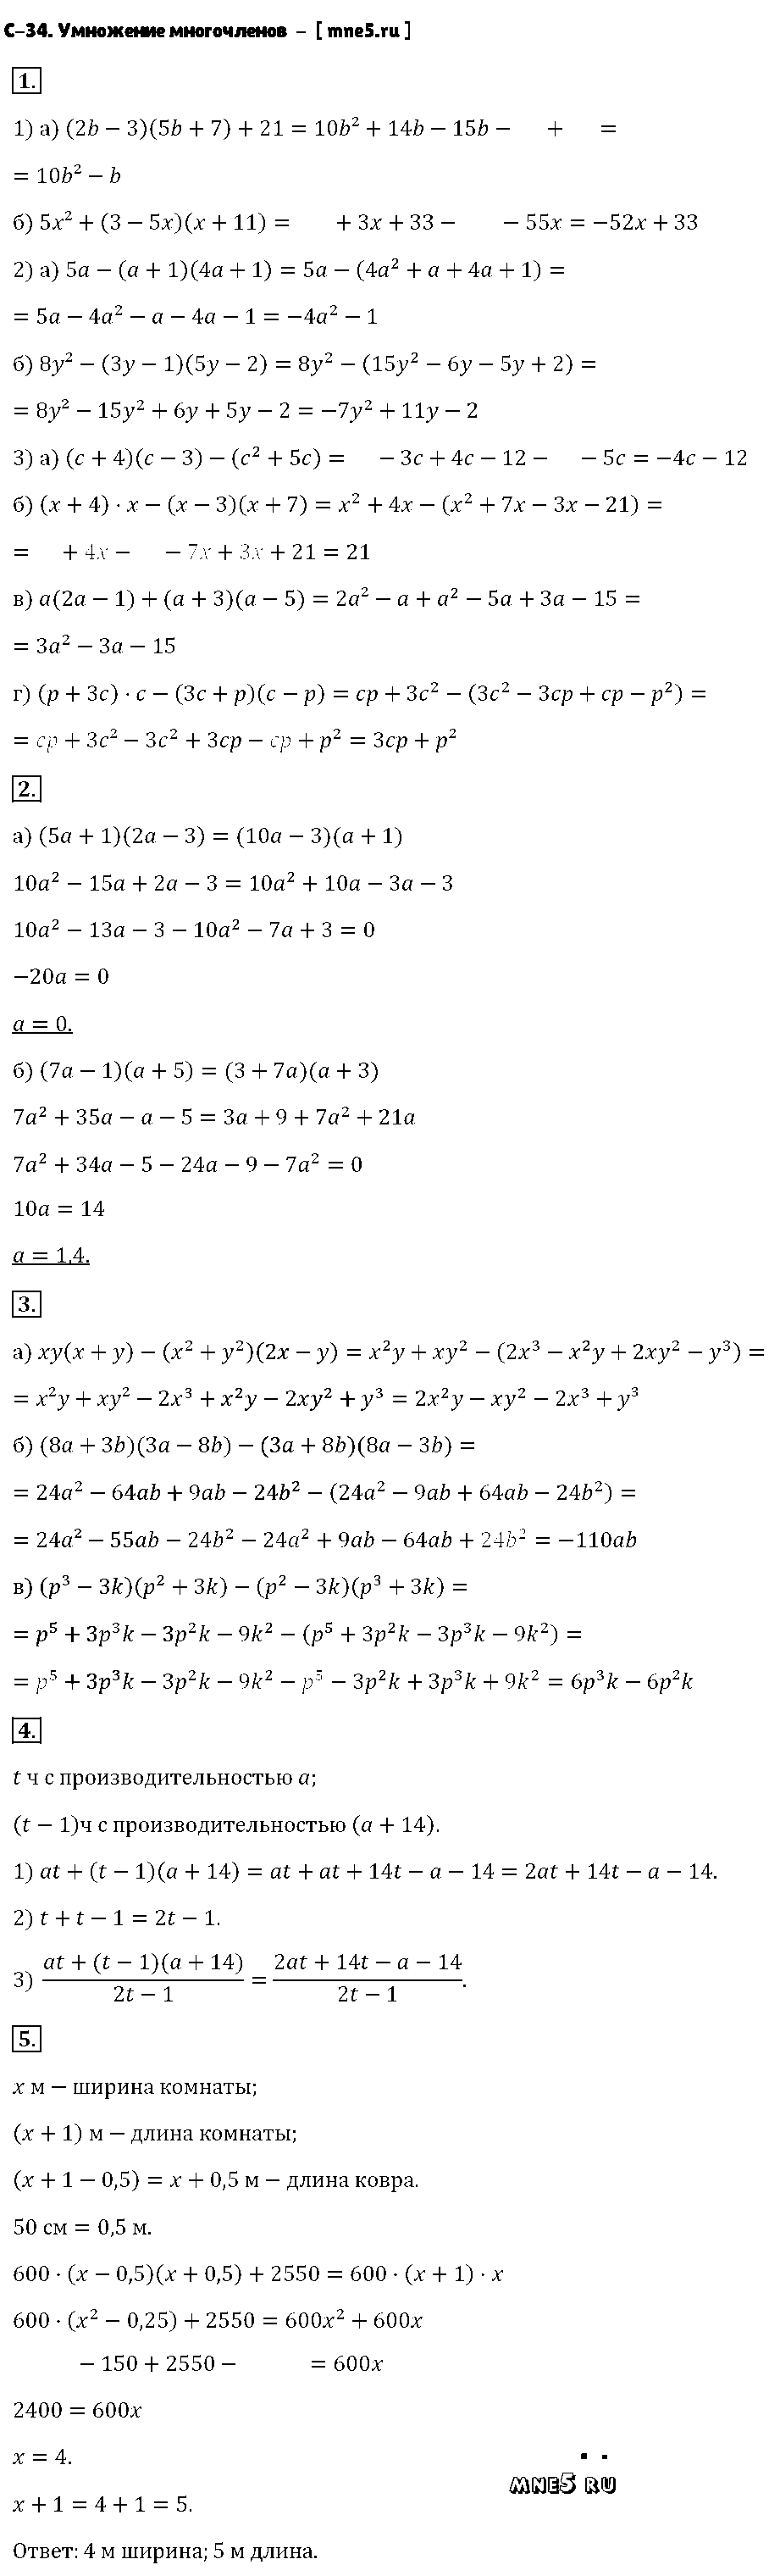 ГДЗ Алгебра 7 класс - С-34. Умножение многочленов